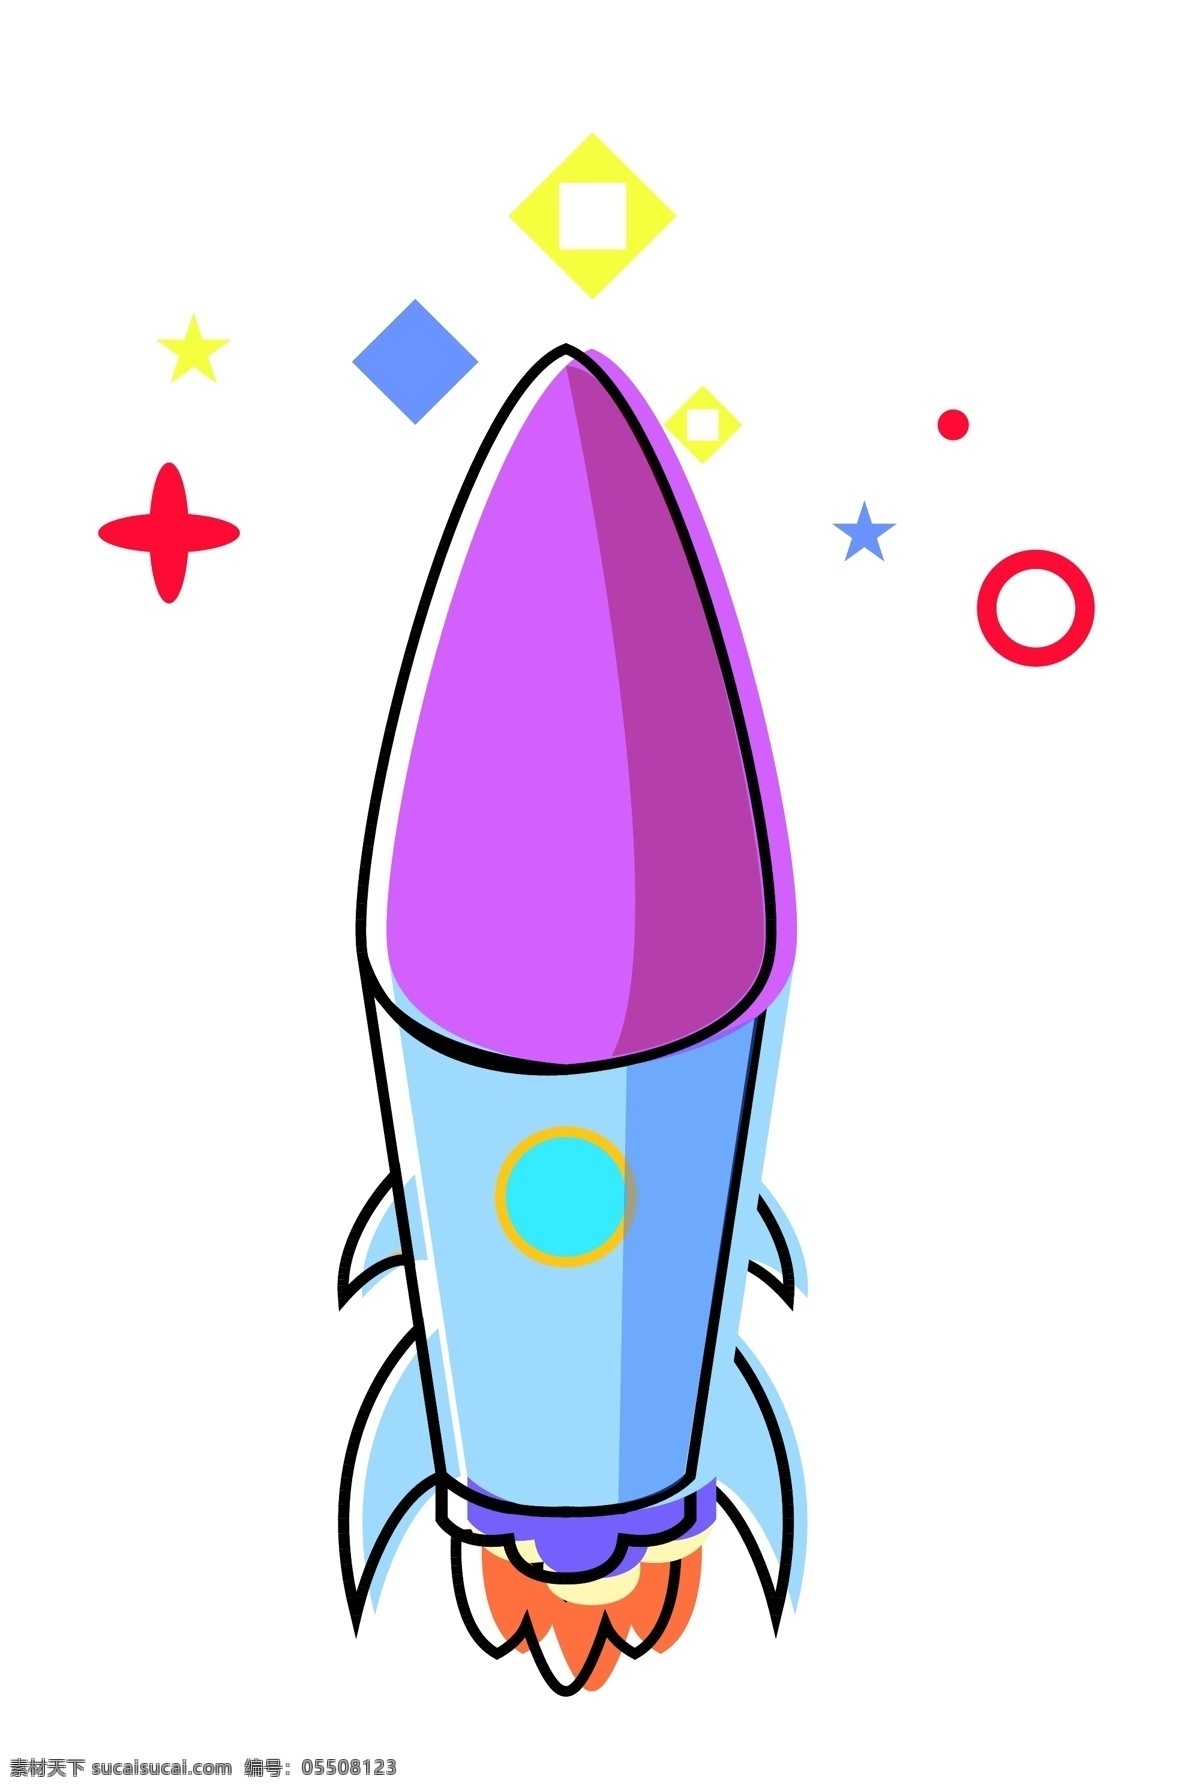 紫色火箭科技 升空 飞行 宇宙